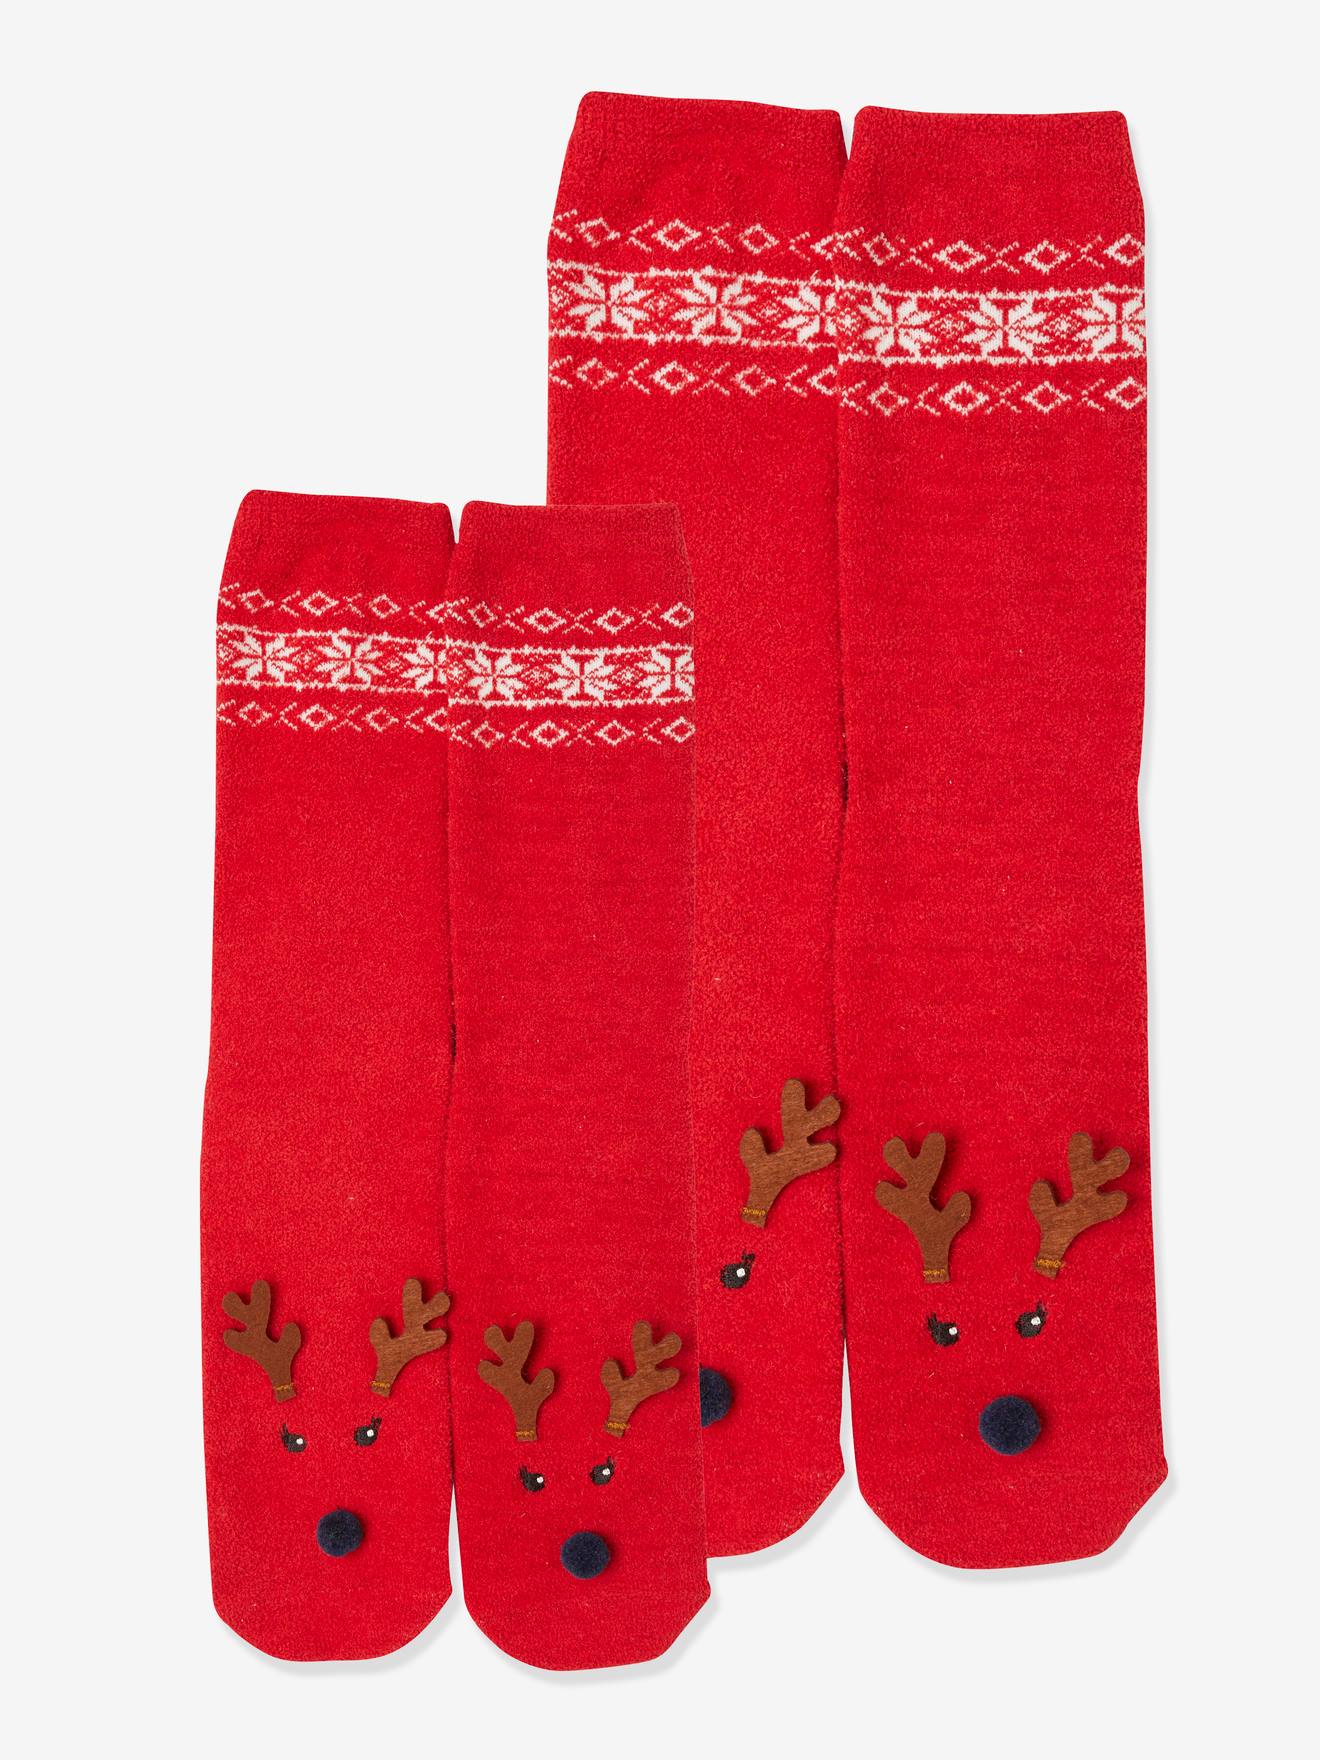 Chaussettes ado style basket couleur rouge - fêtes adolescents - Noël